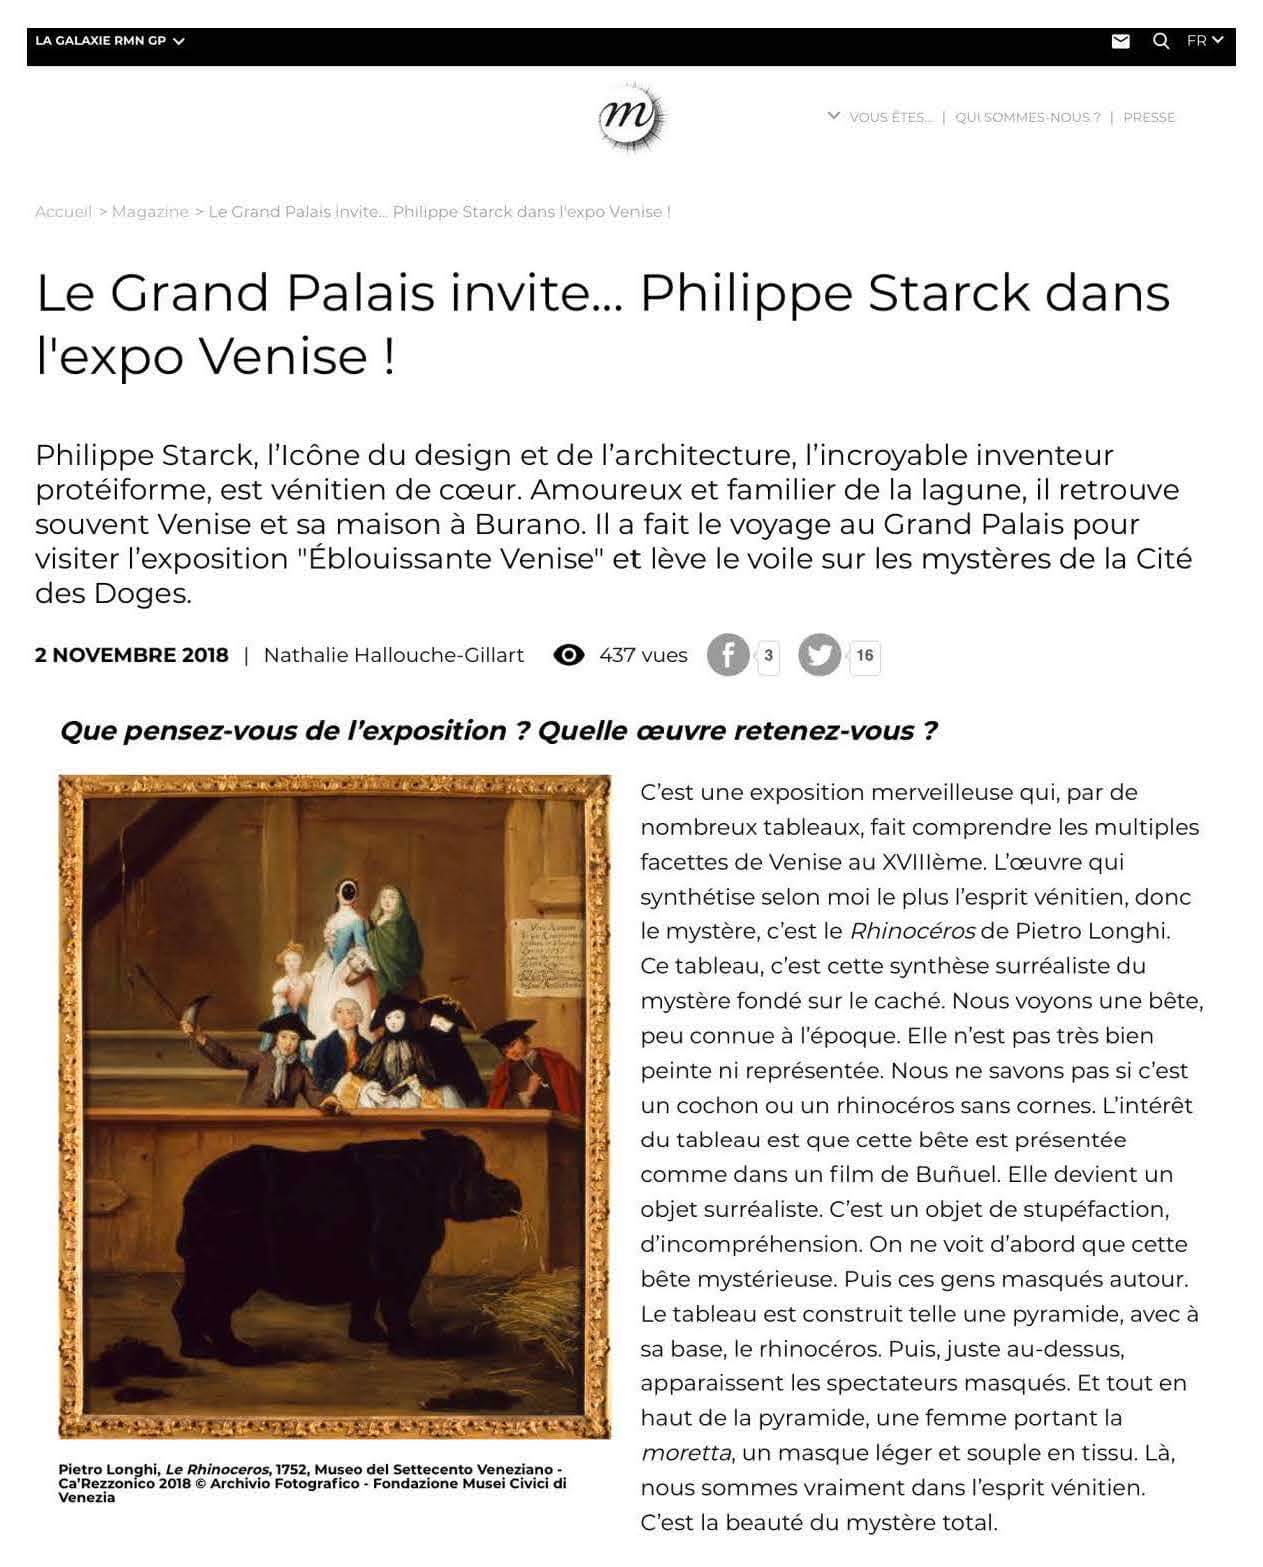 Le Grand Palais invite Philippe Starck à l'exposition Venise.